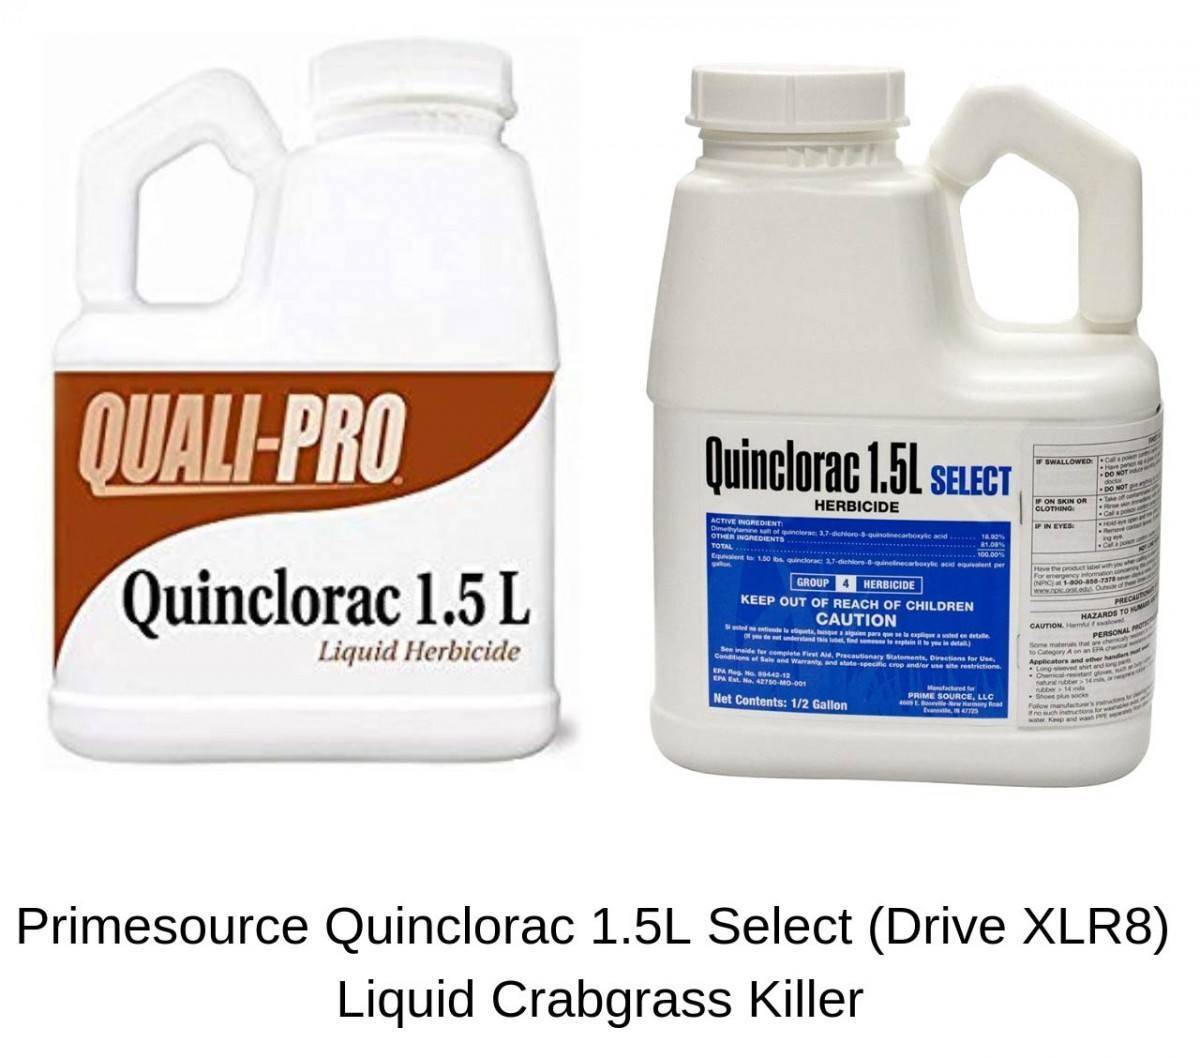 Primesource Quinclorac 1.5L Select (Drive XLR8) Liquid Crabgrass Killer